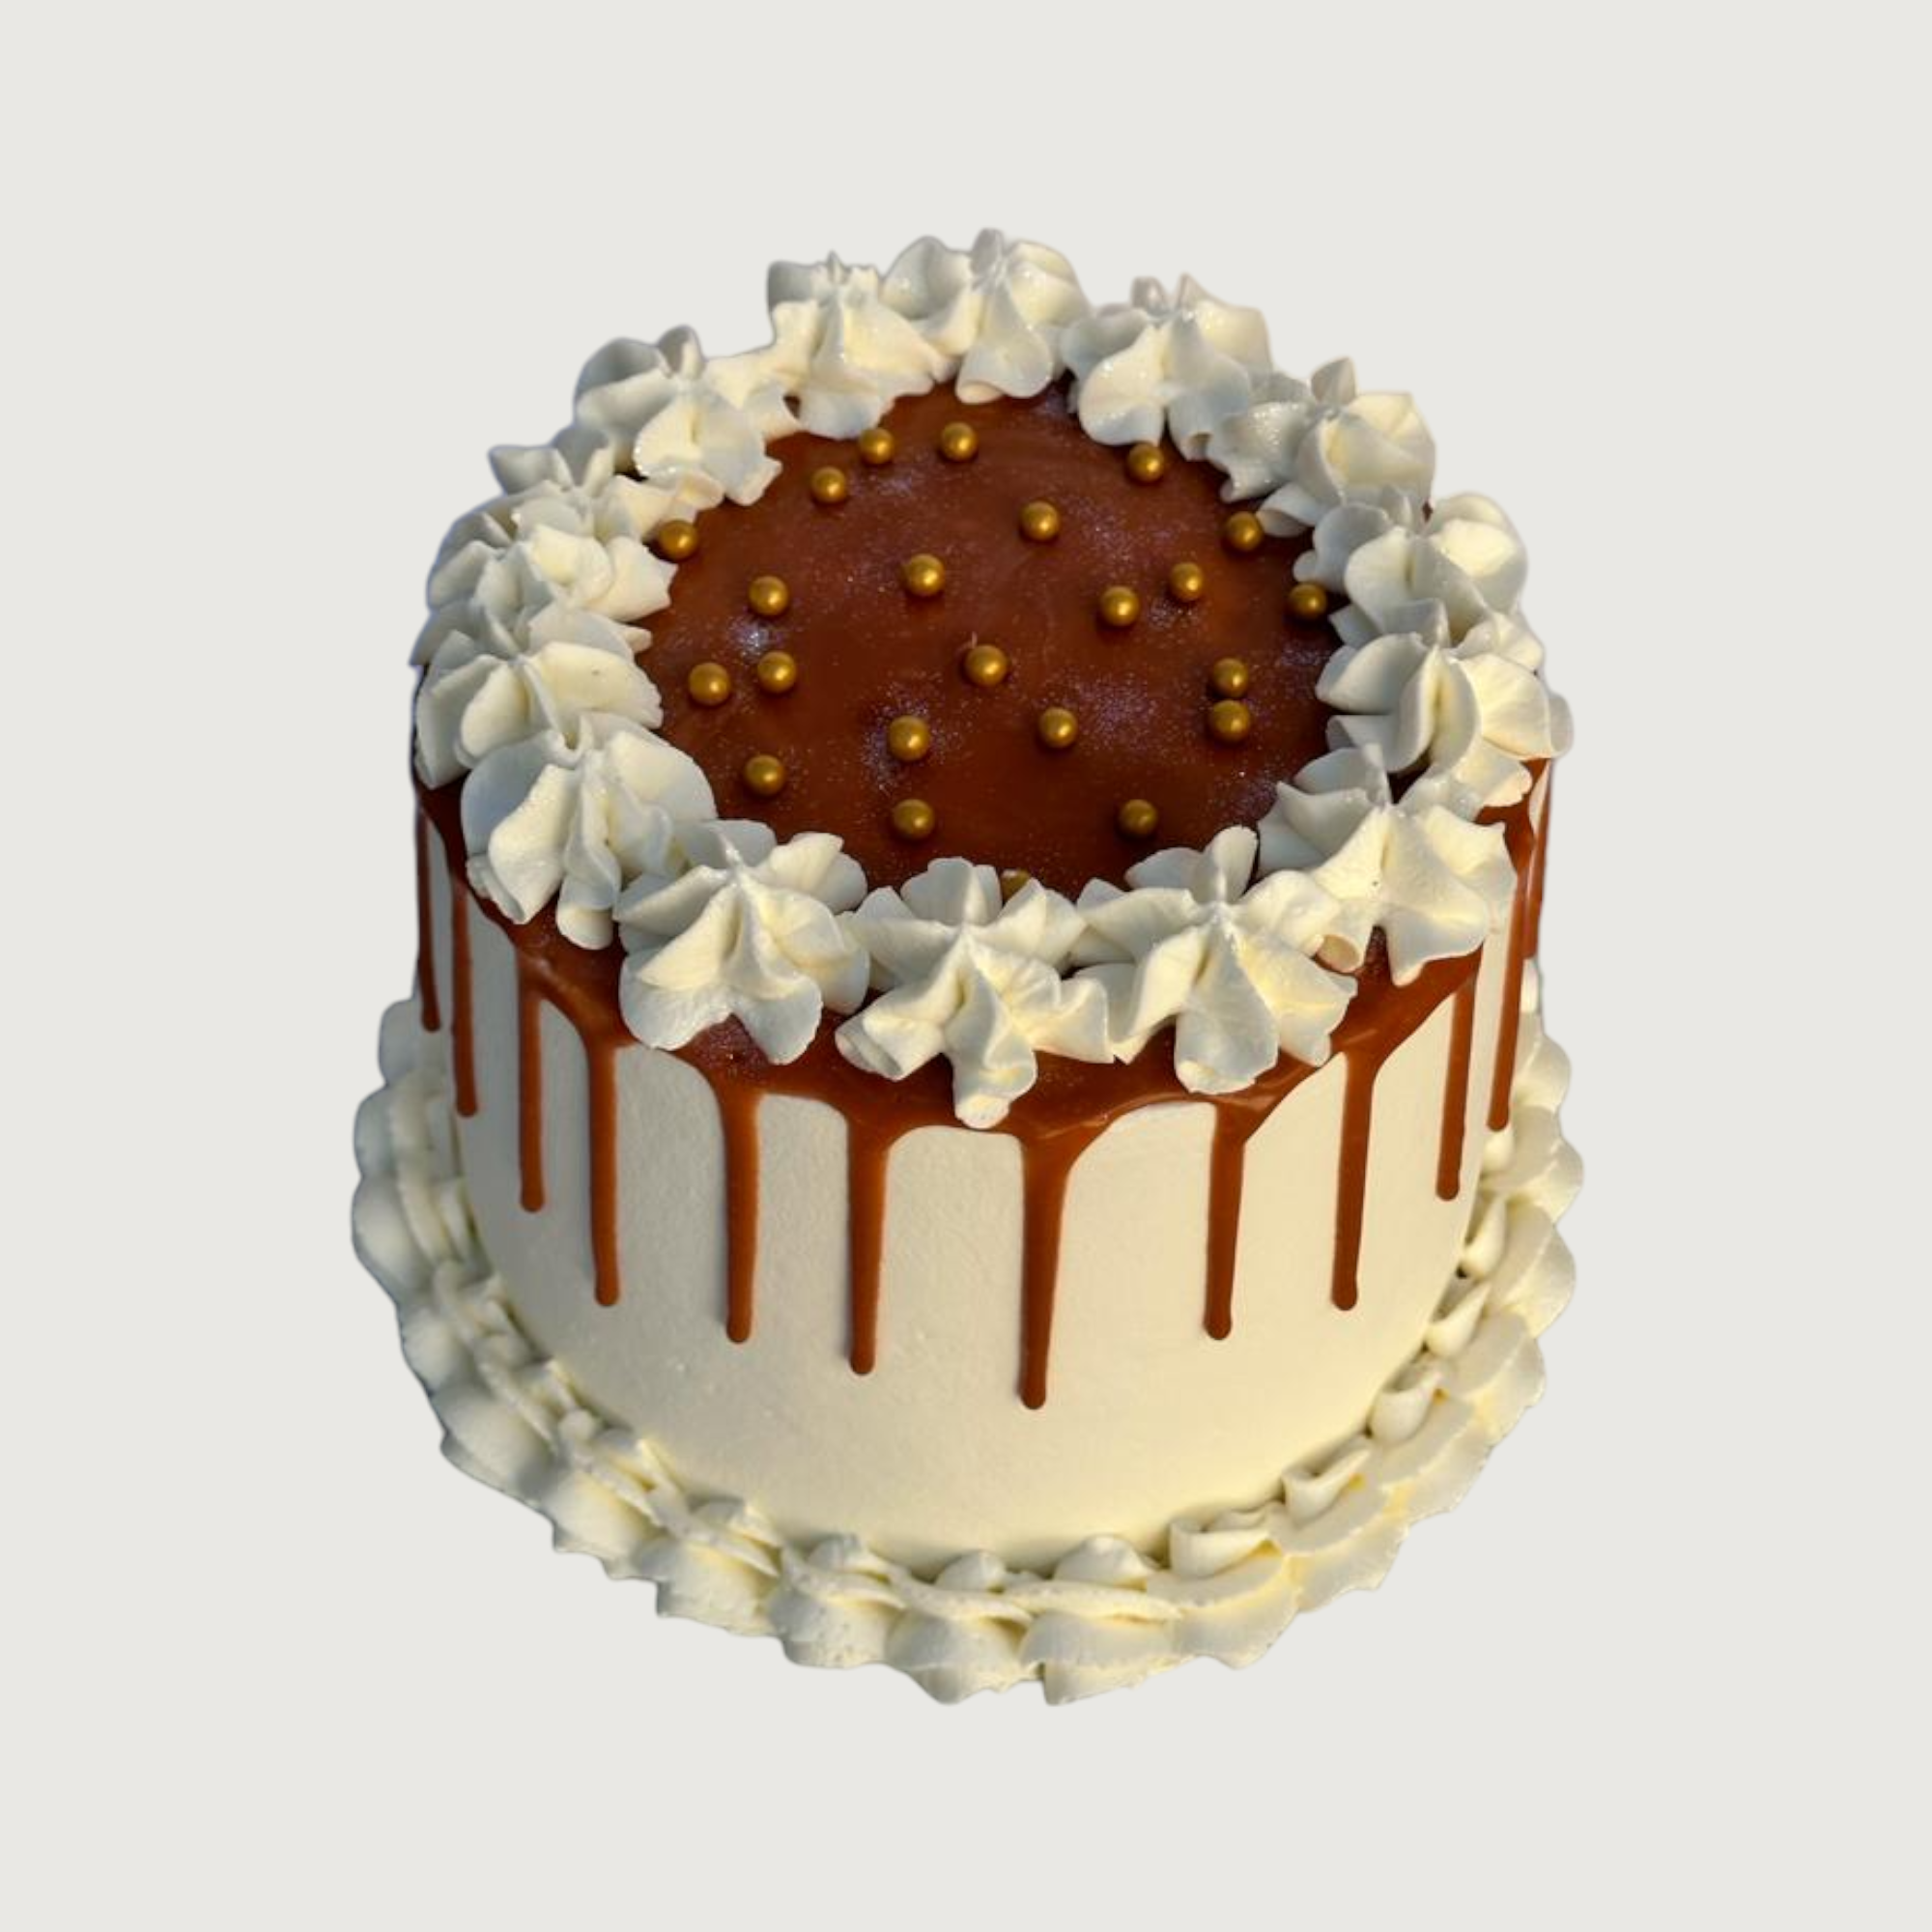 BUTTERSCOTCH CAKE - Baker's Hub, Nepal: Online Cake Delivery Platform